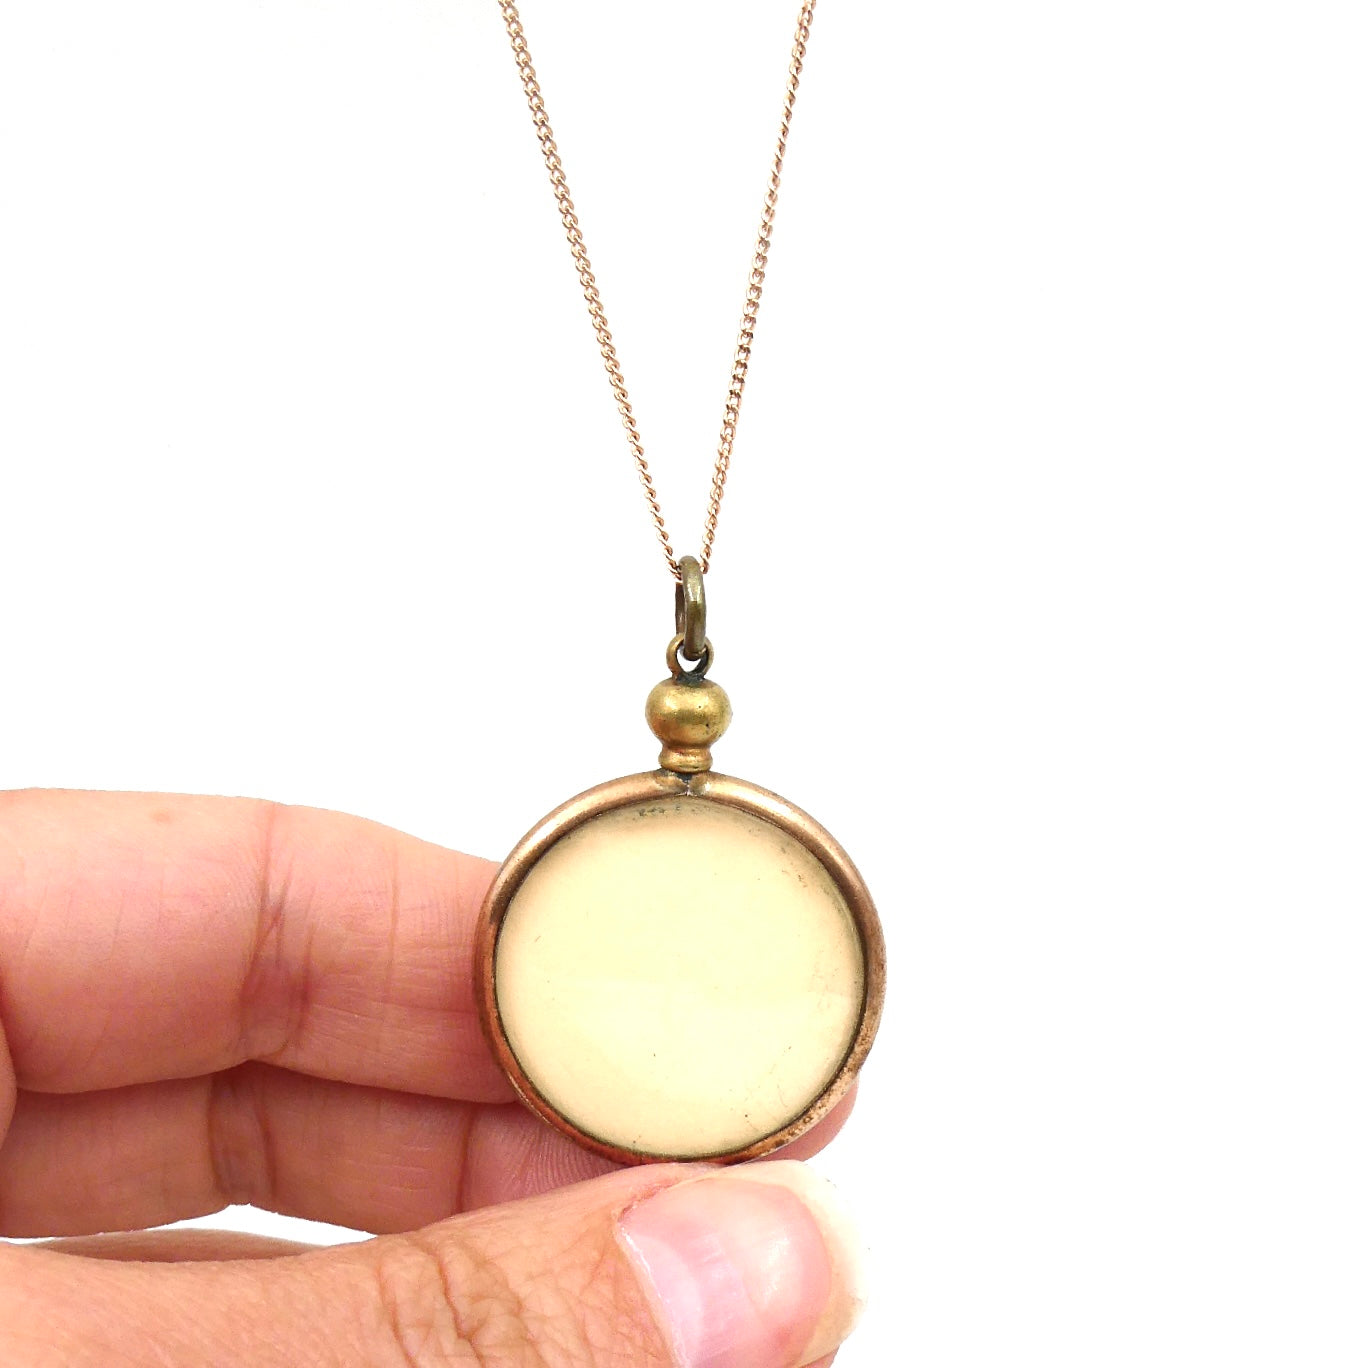 Vintage 9kt gold pendant for two photographs, vintage photo frame necklace, ideal vintage memory gift.